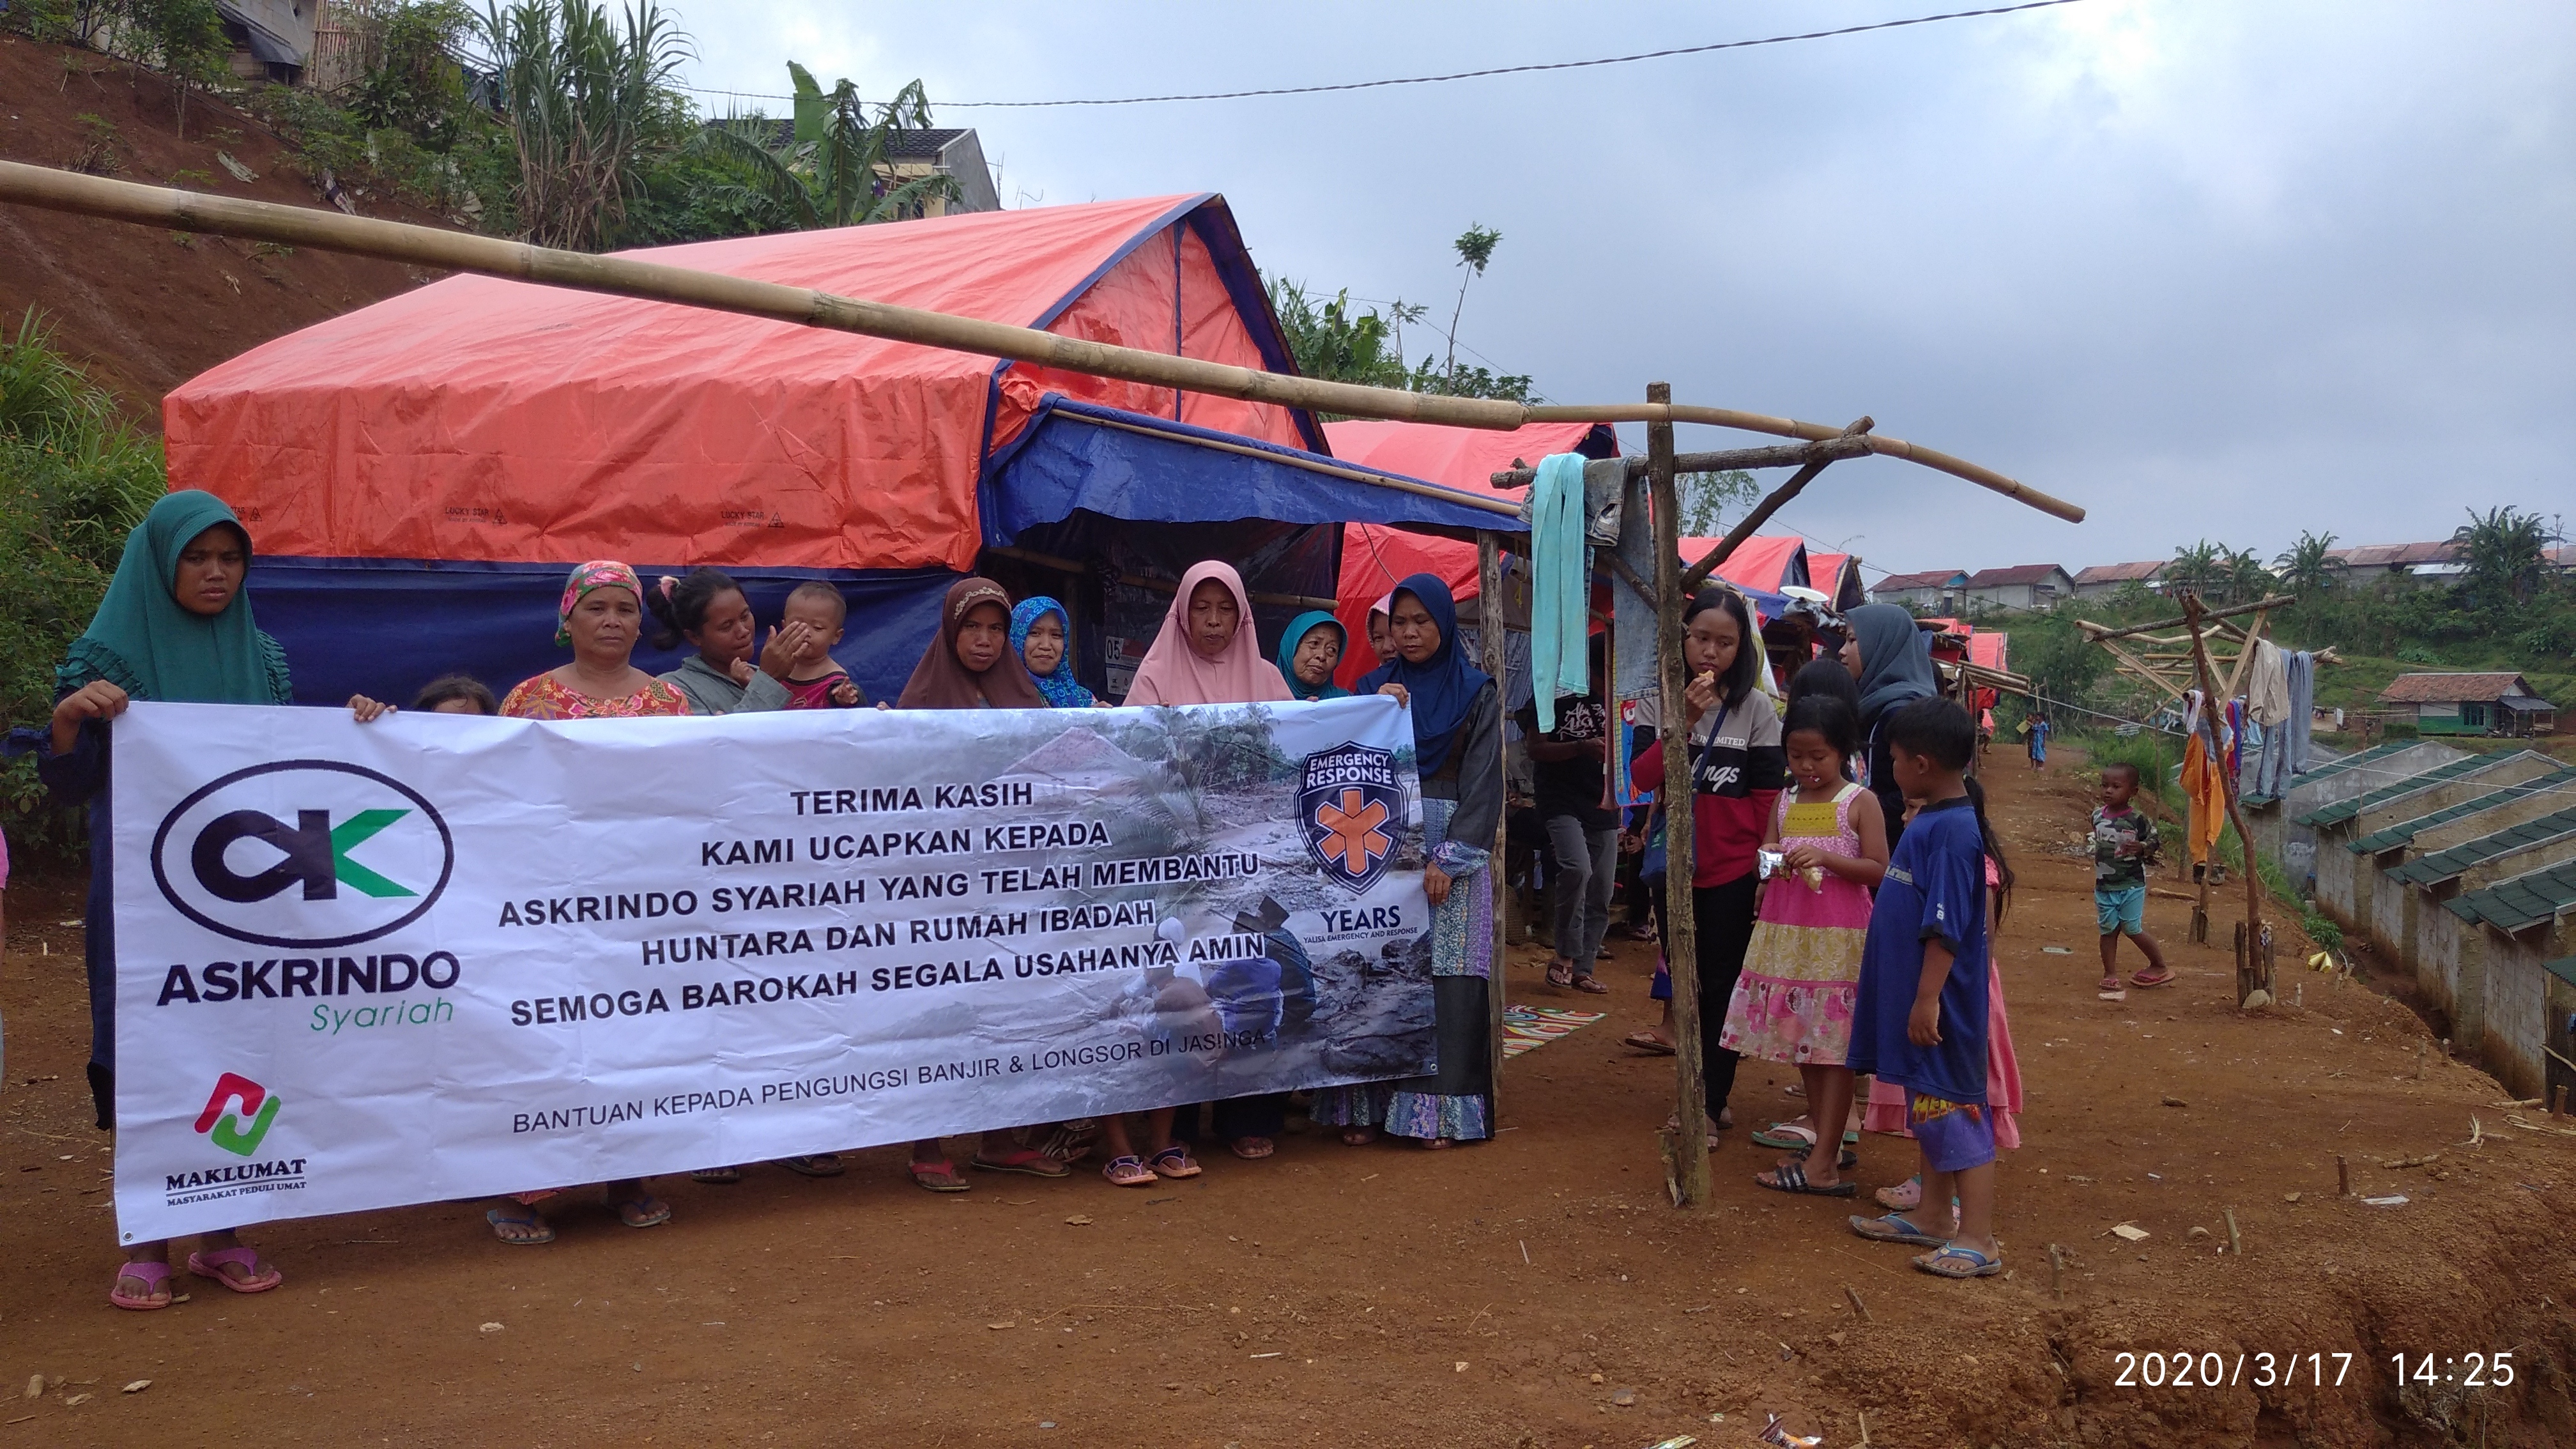 Askrindo Syariah menggandeng Yalisa membuat HunianSementara (Huntara) dan Rumah Ibadah bagi Korban Bencana Banjir dan Longsor di Jasinga, Bogor